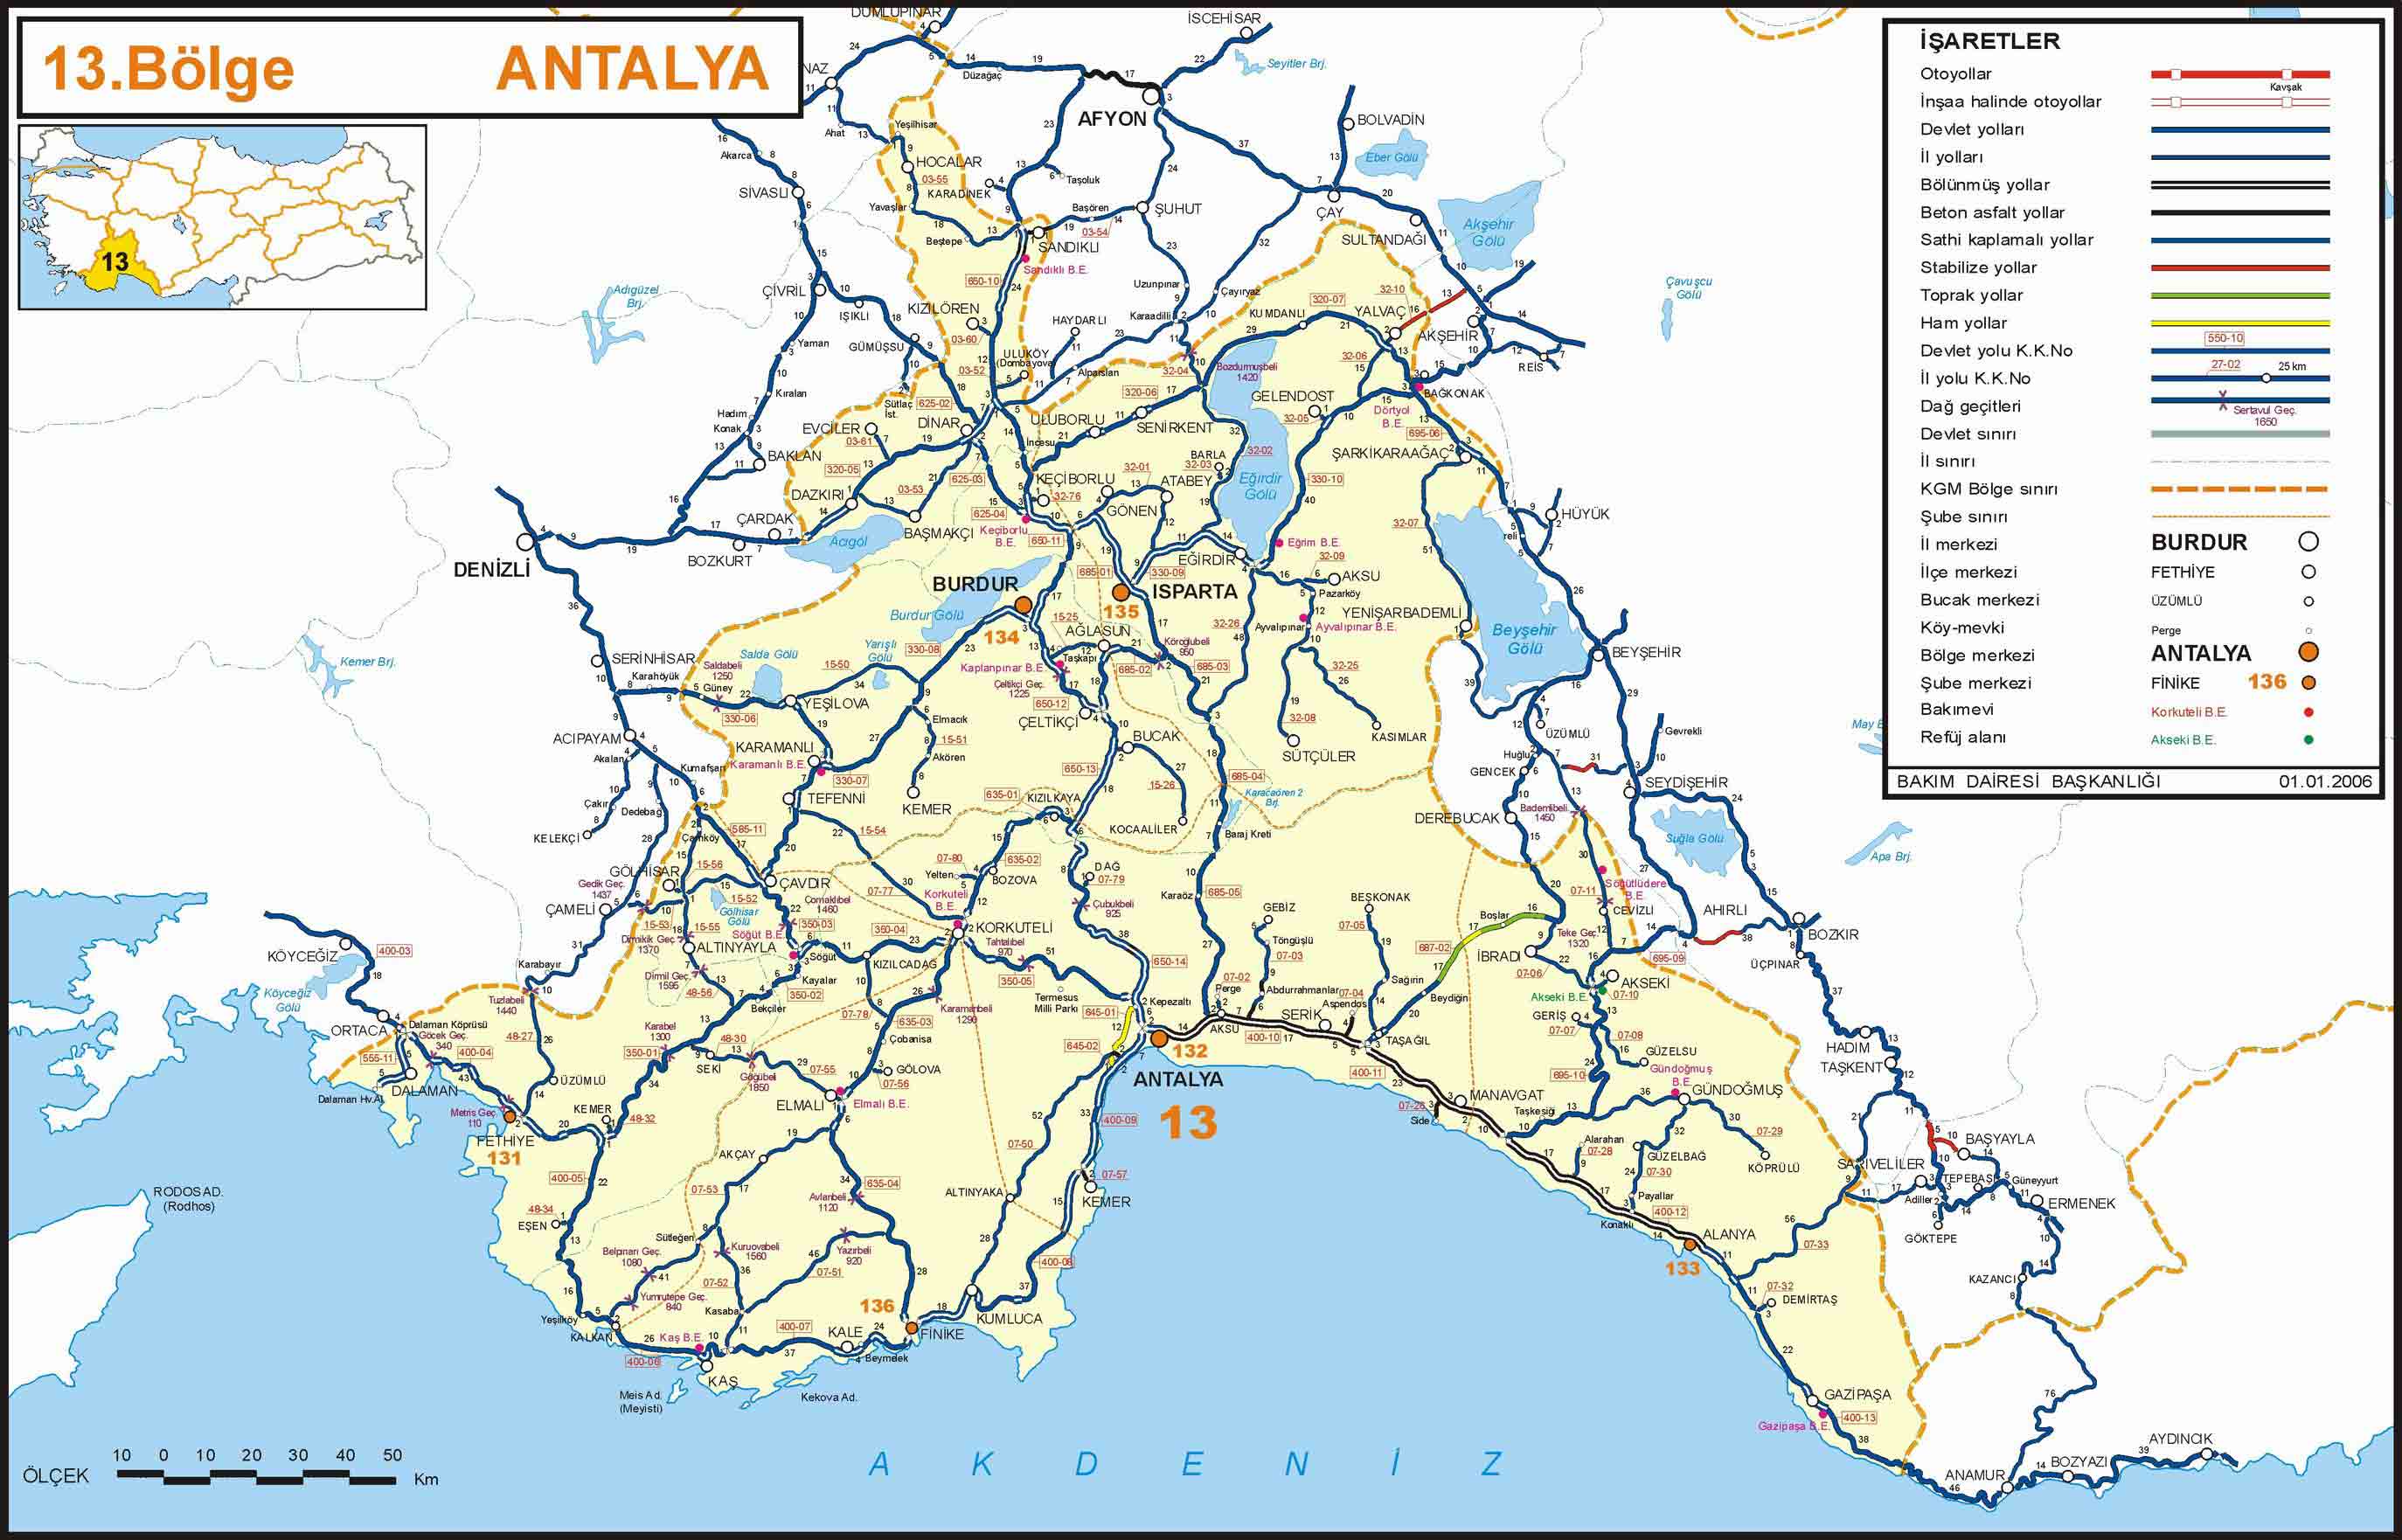 burdur road map